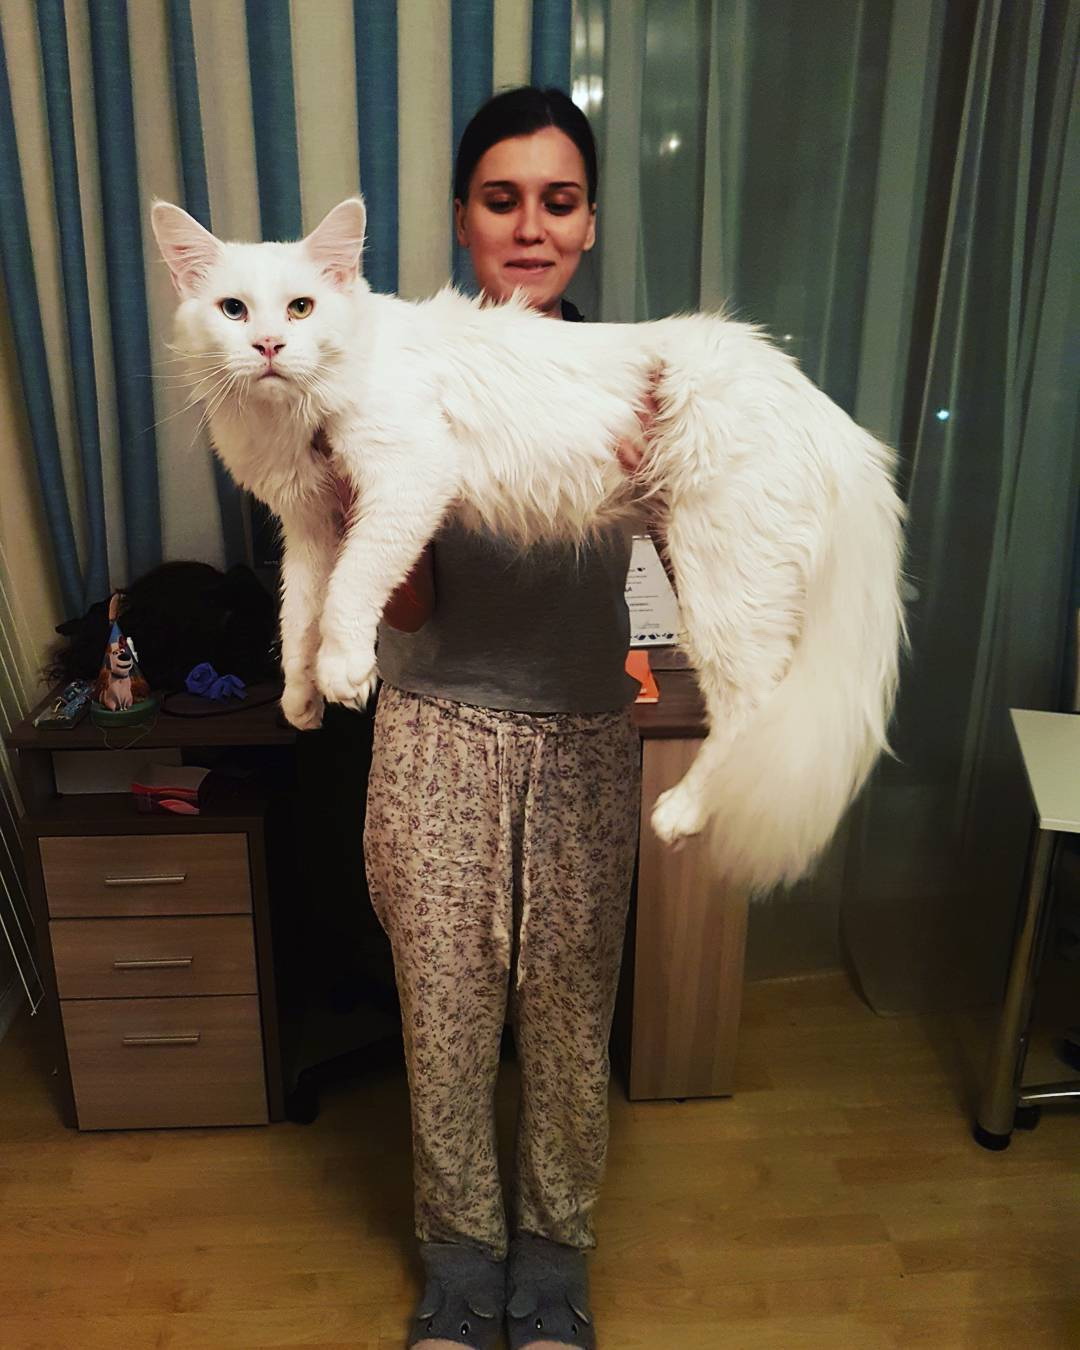 Nézze meg a macskát, aki majdnem akkora, mint gazdája - képek - Blikk